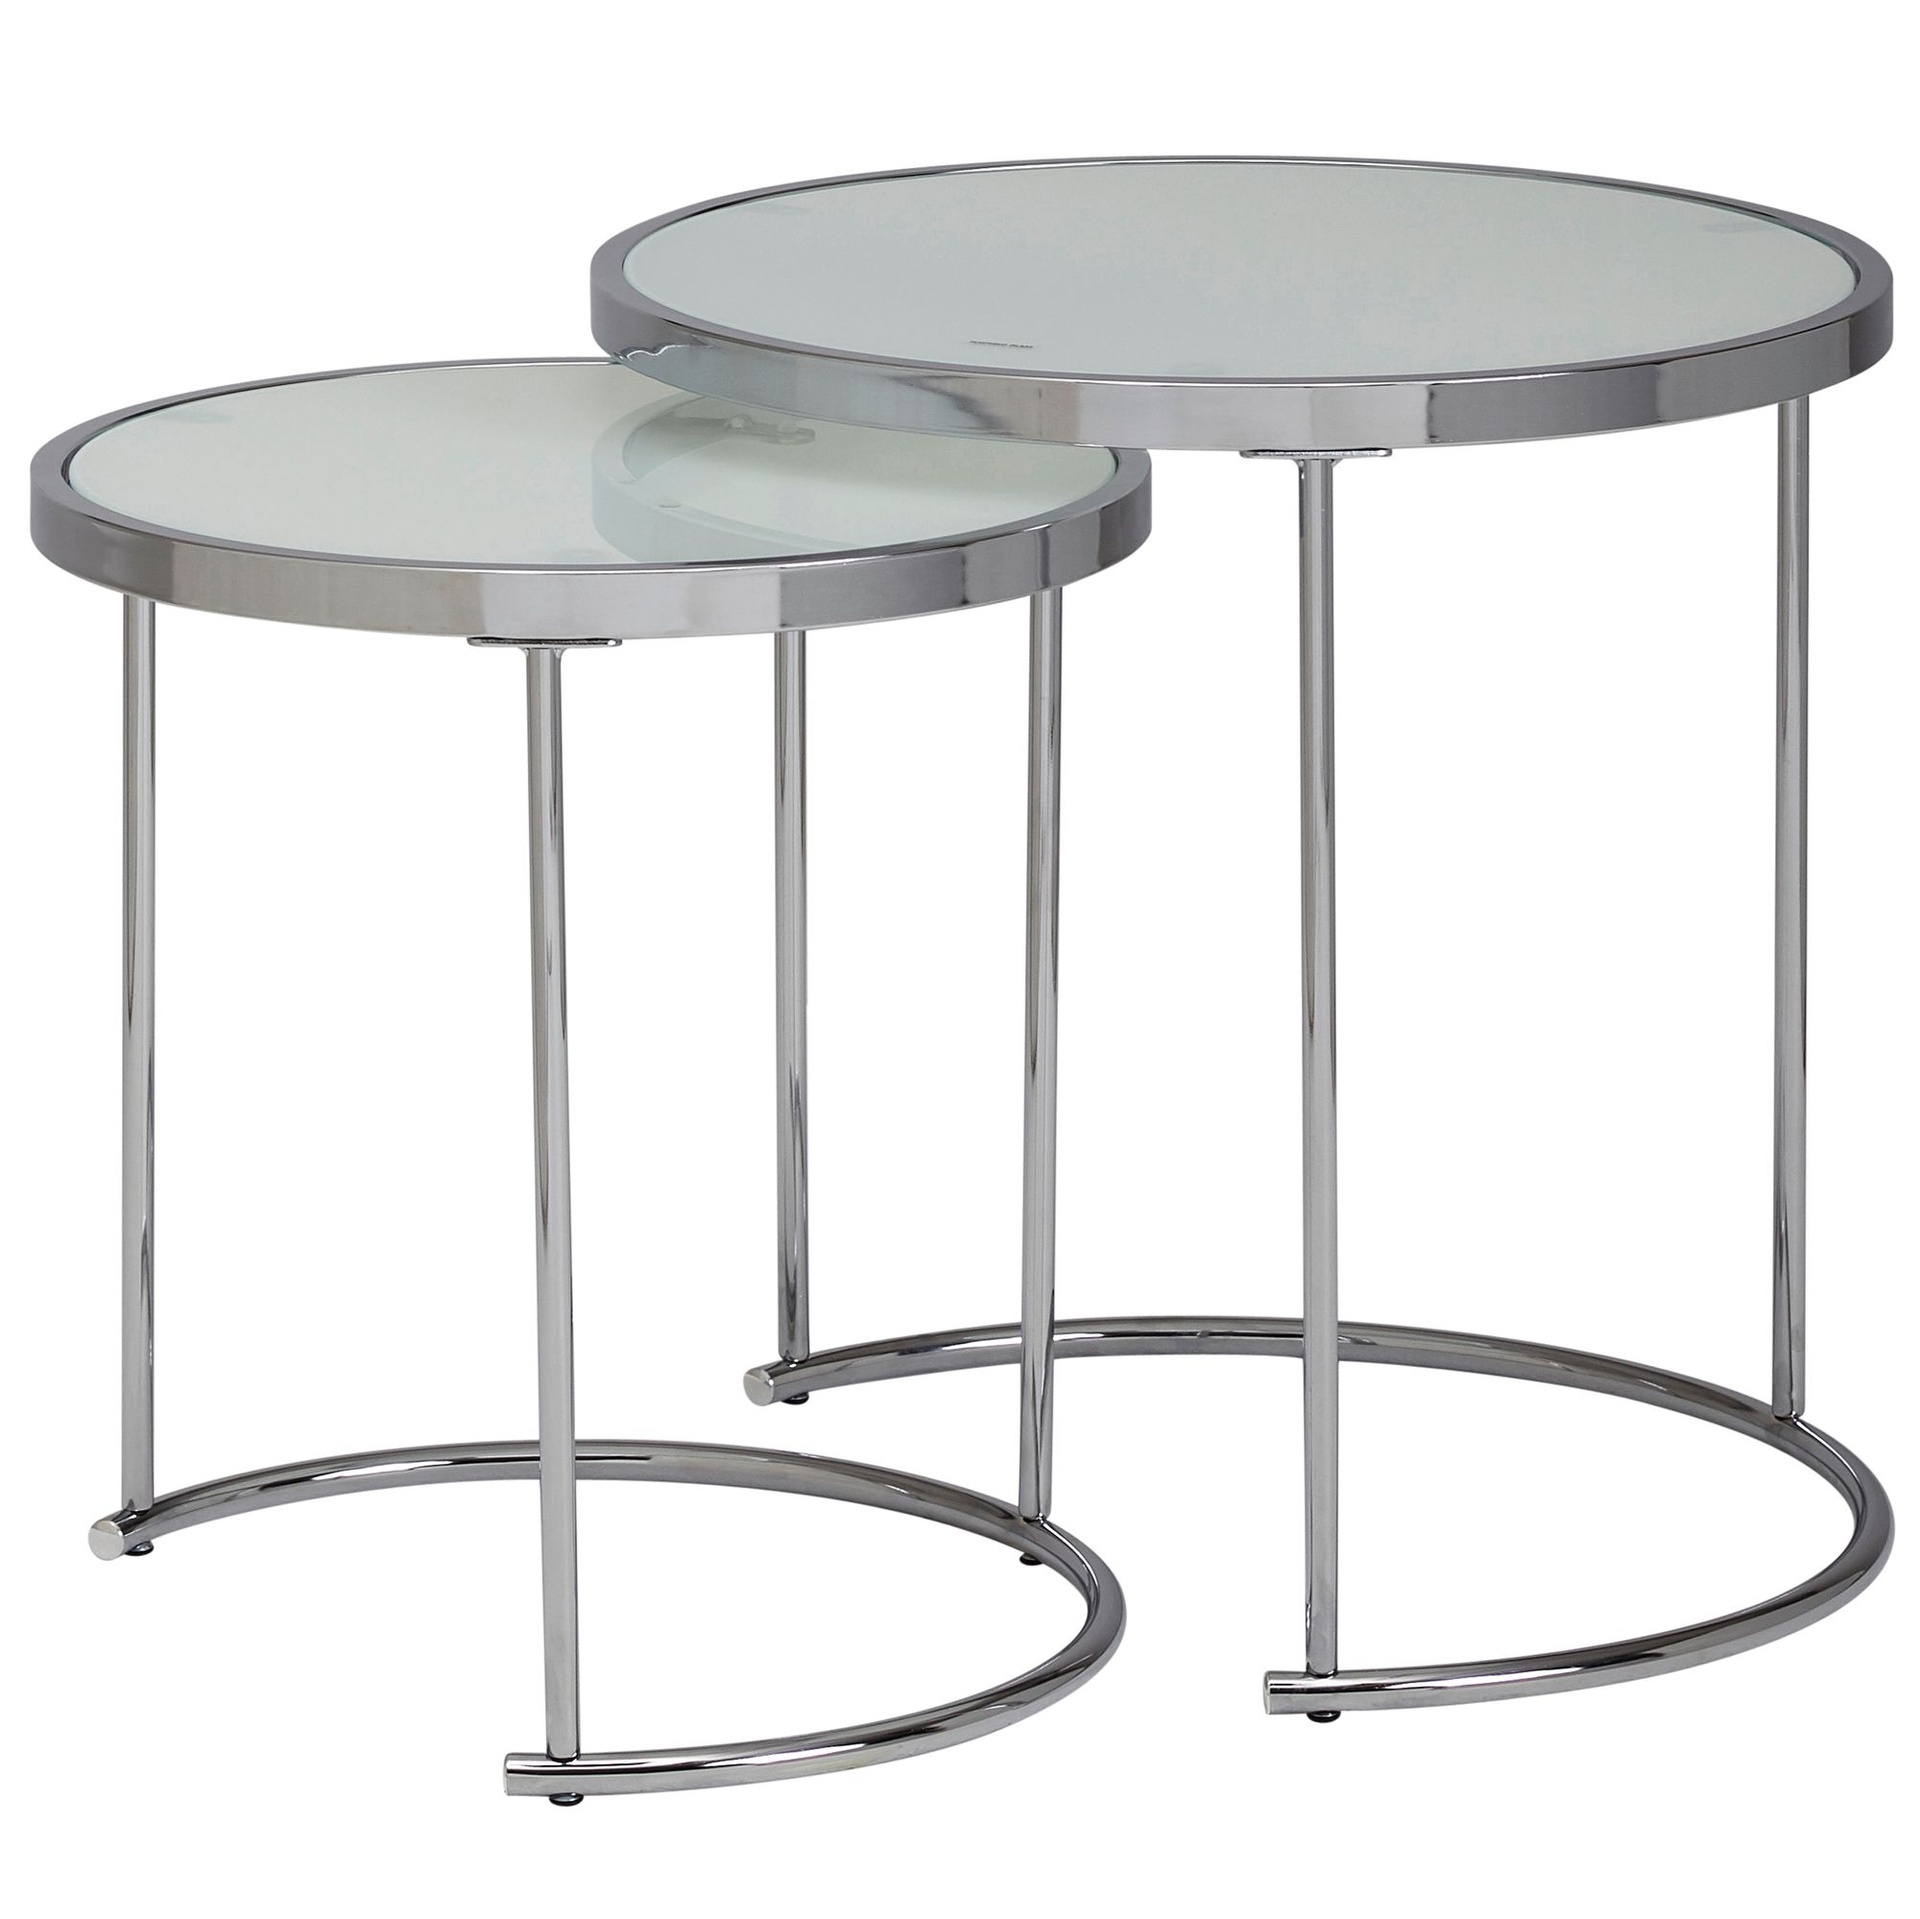 [A09973] Design table d'appoint ronde Ø 50/42 cm - 2 parties blanc argent avec plateau en verre